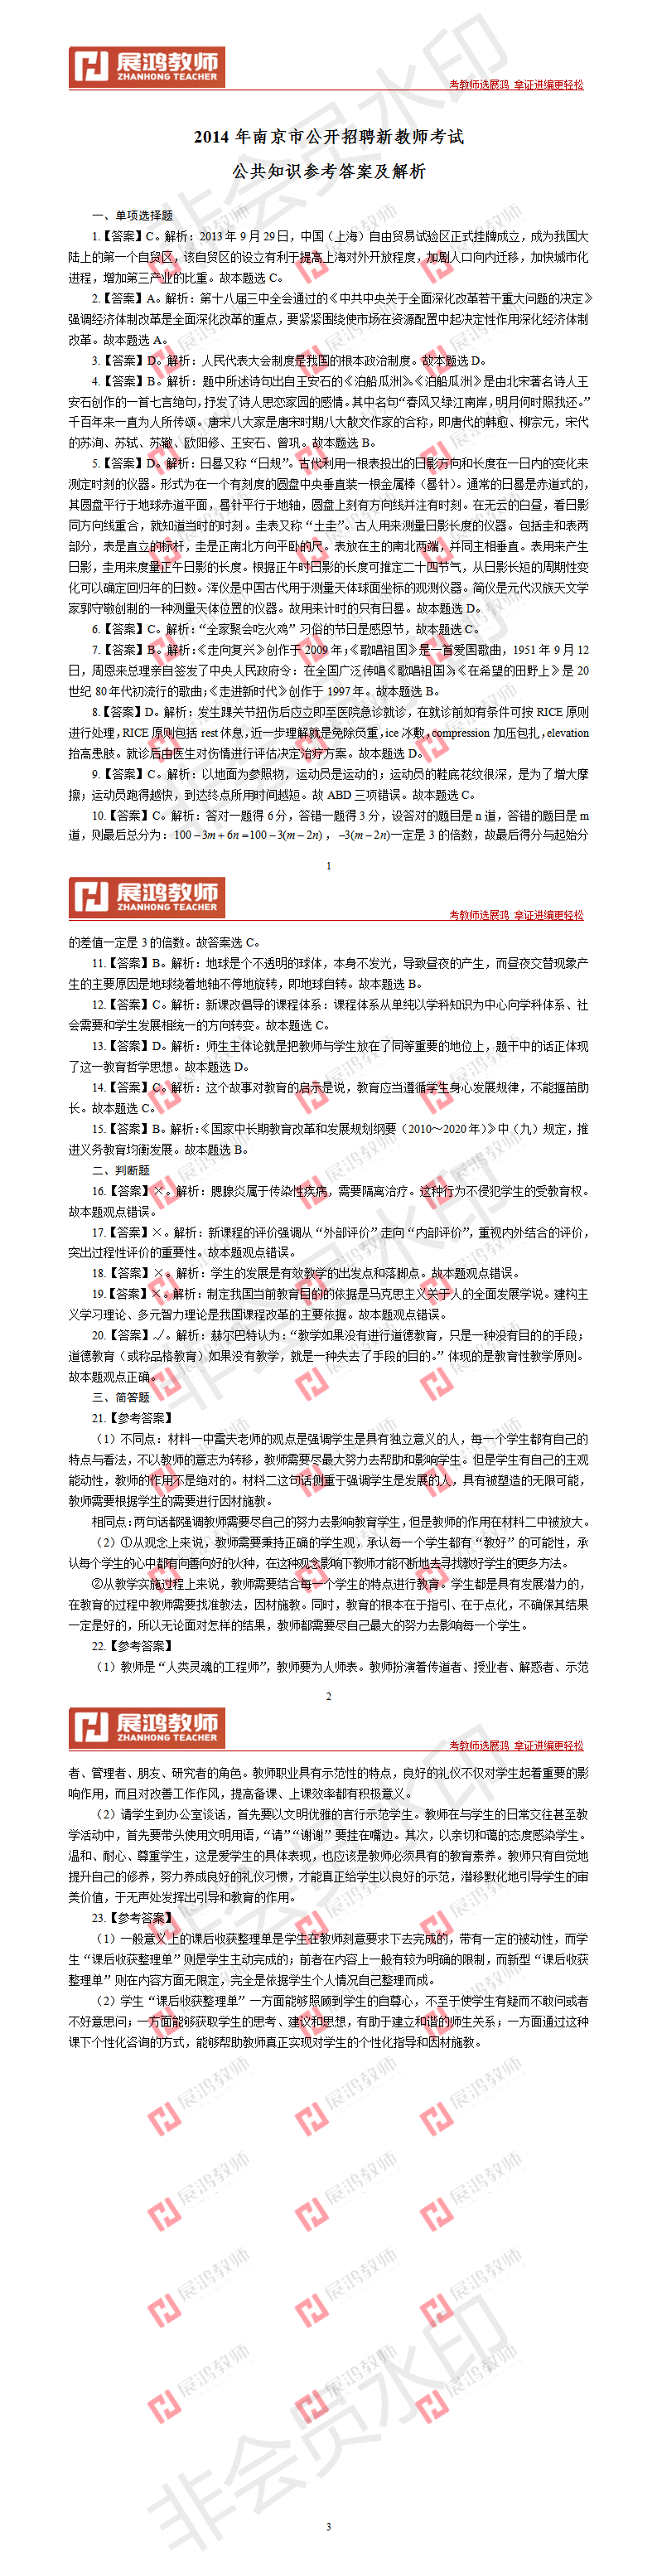 【站群11】2014年南京市公开招聘新教师考试公共知识参考答案.png